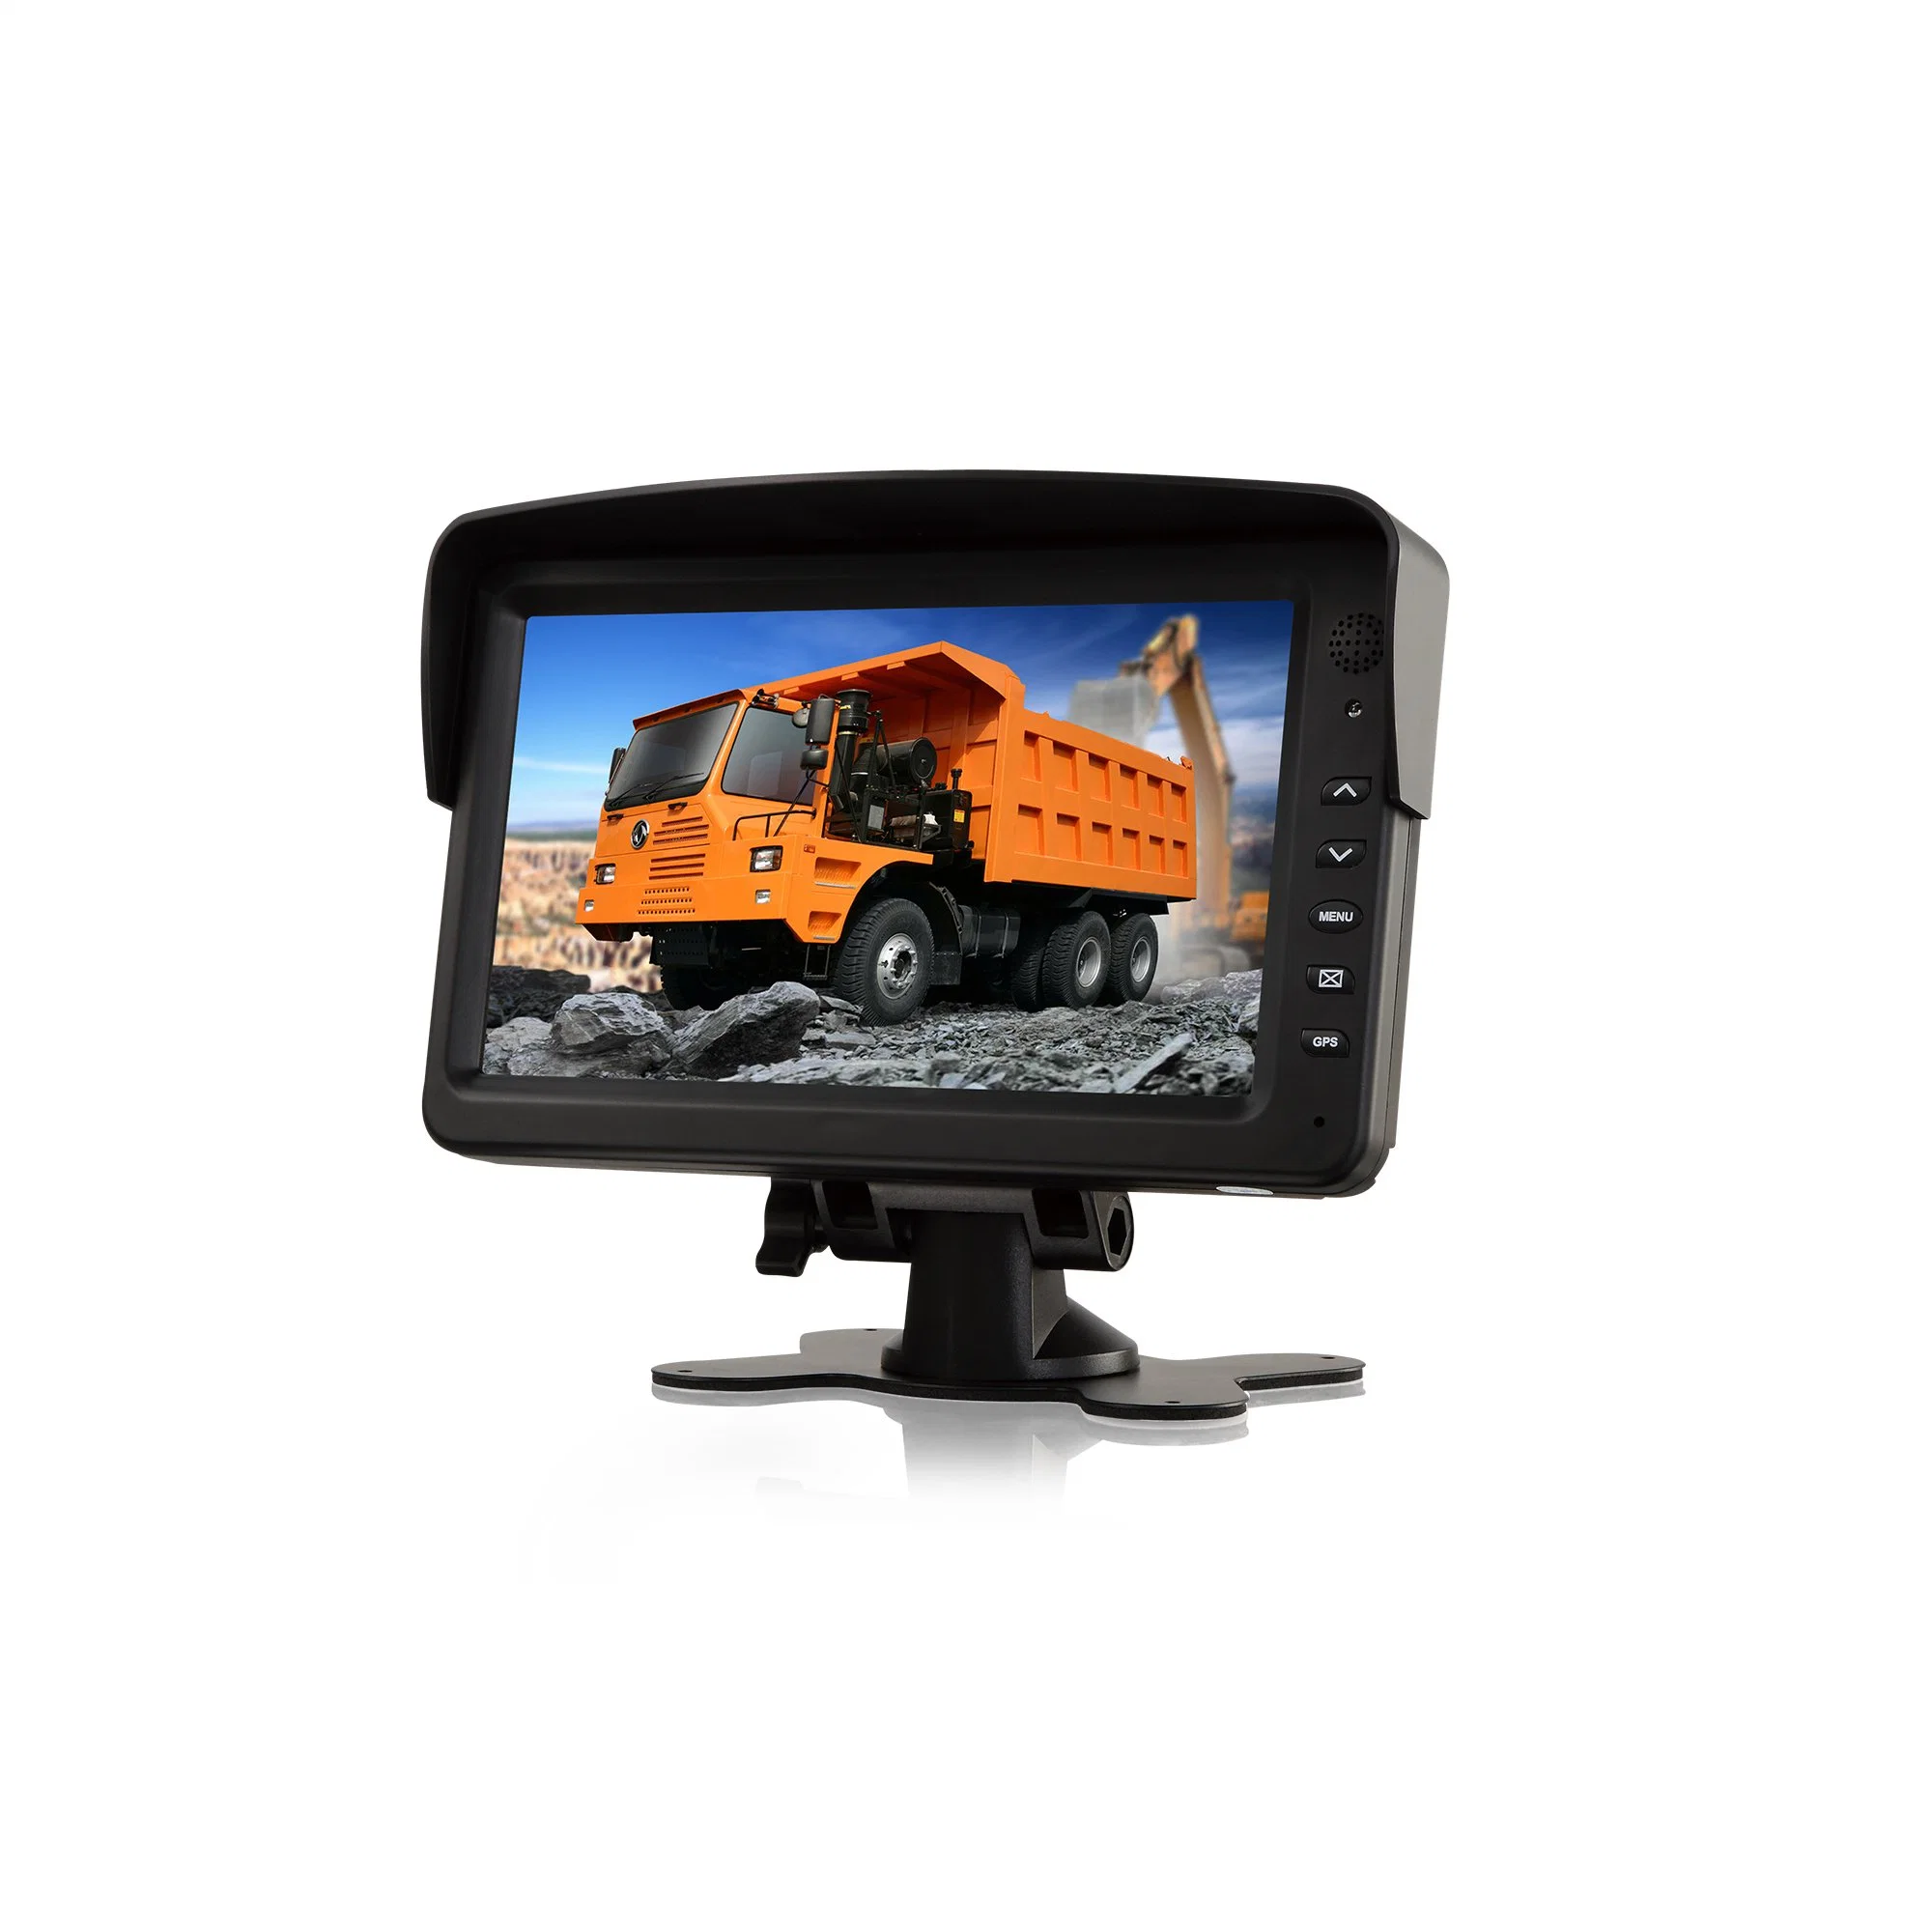 Pantalla de 7inch Dash Mount Monitor Car Display con 3 Video Entradas para ayuda de marcha atrás TFT LCD 800*480 resolución